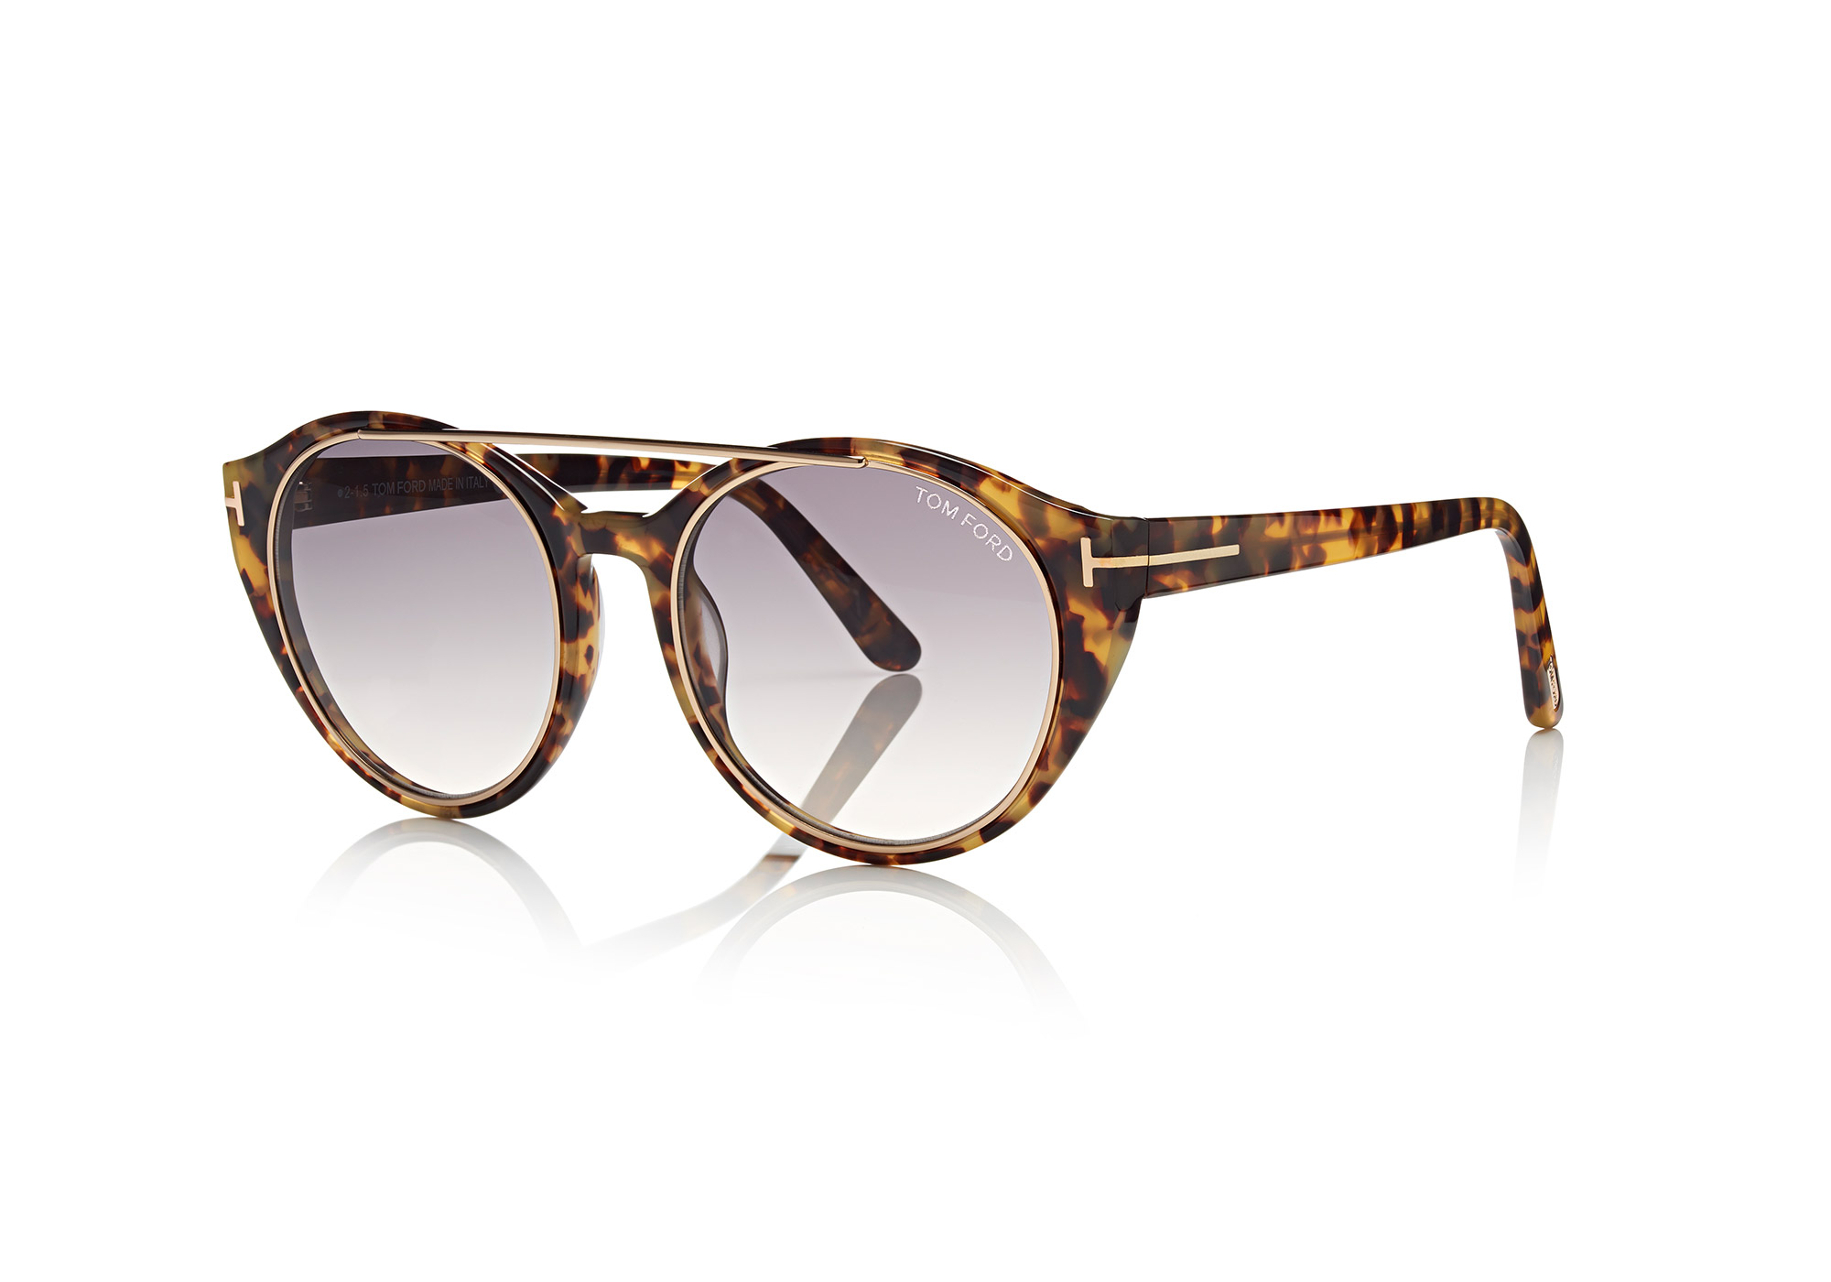 Marcolin Eyewear sunglasses Tom Ford FW 15 16 (2)